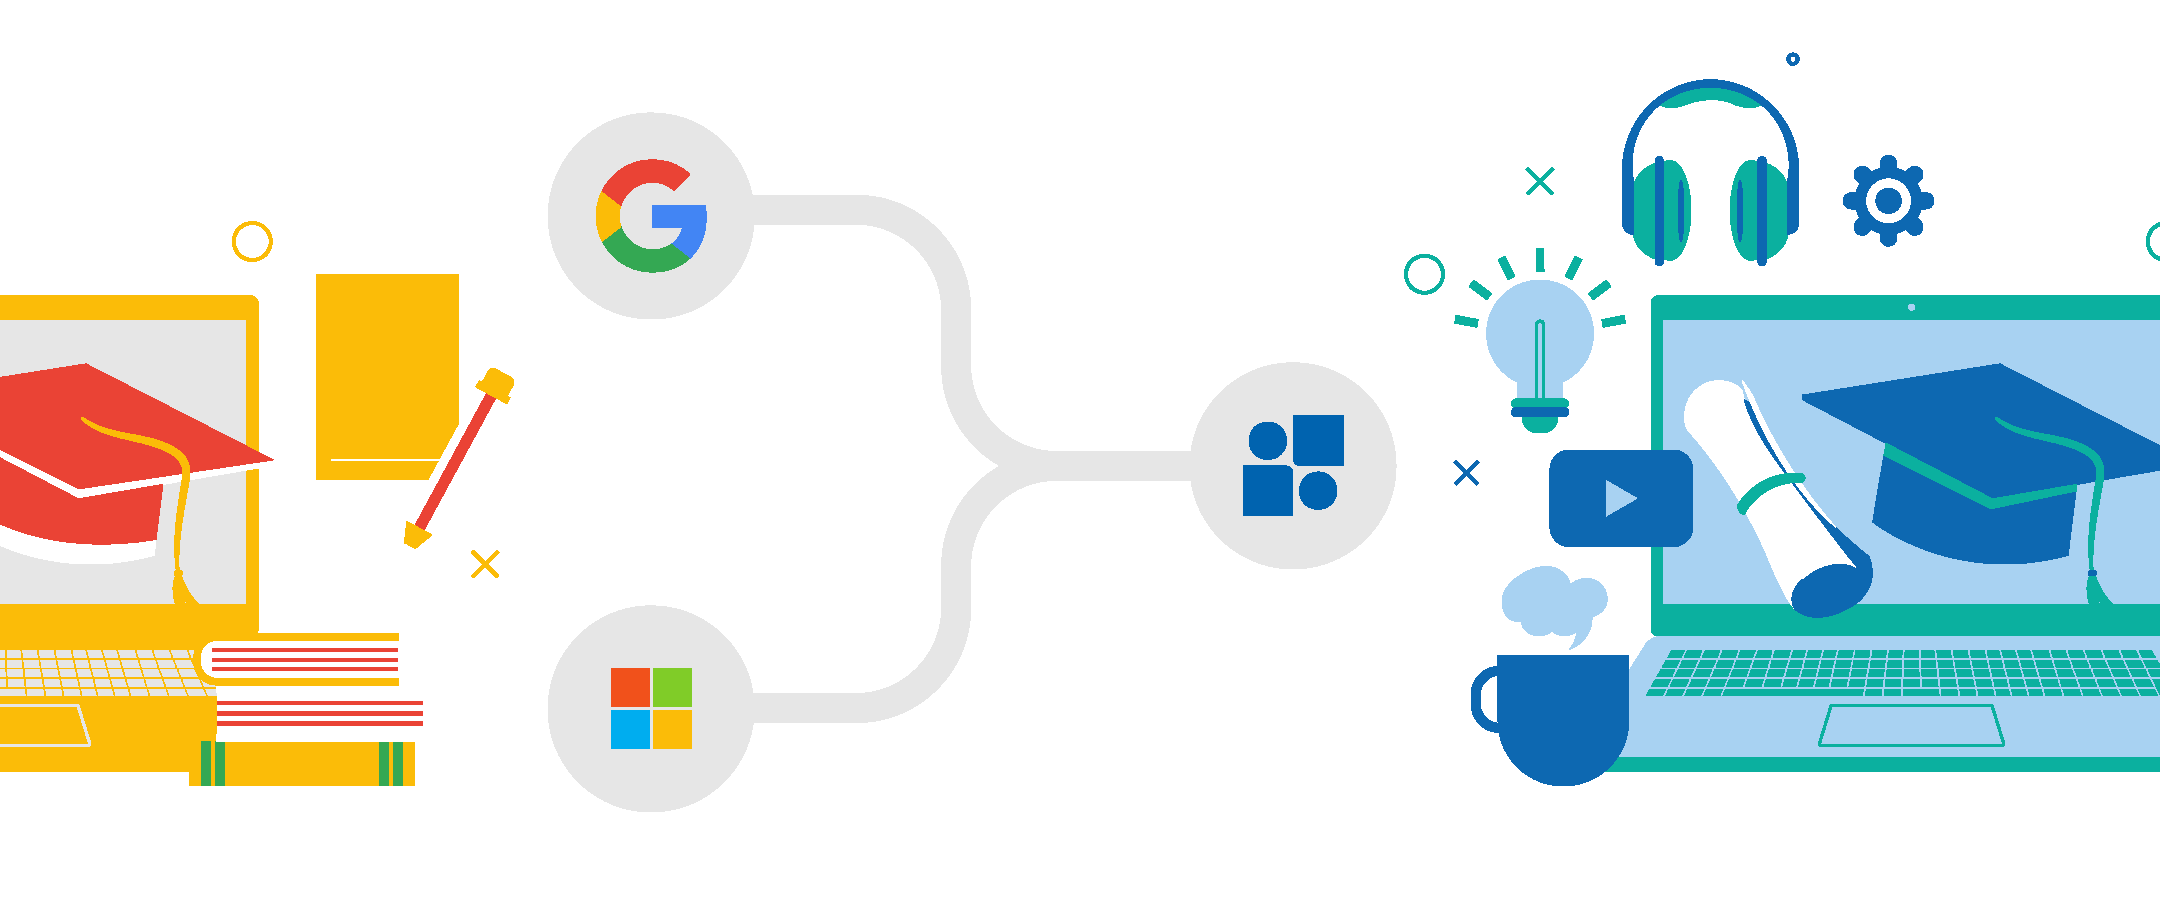 Illustration article L’éducation et l’usage des suites collaboratives : l’après Microsoft et Google se construit !